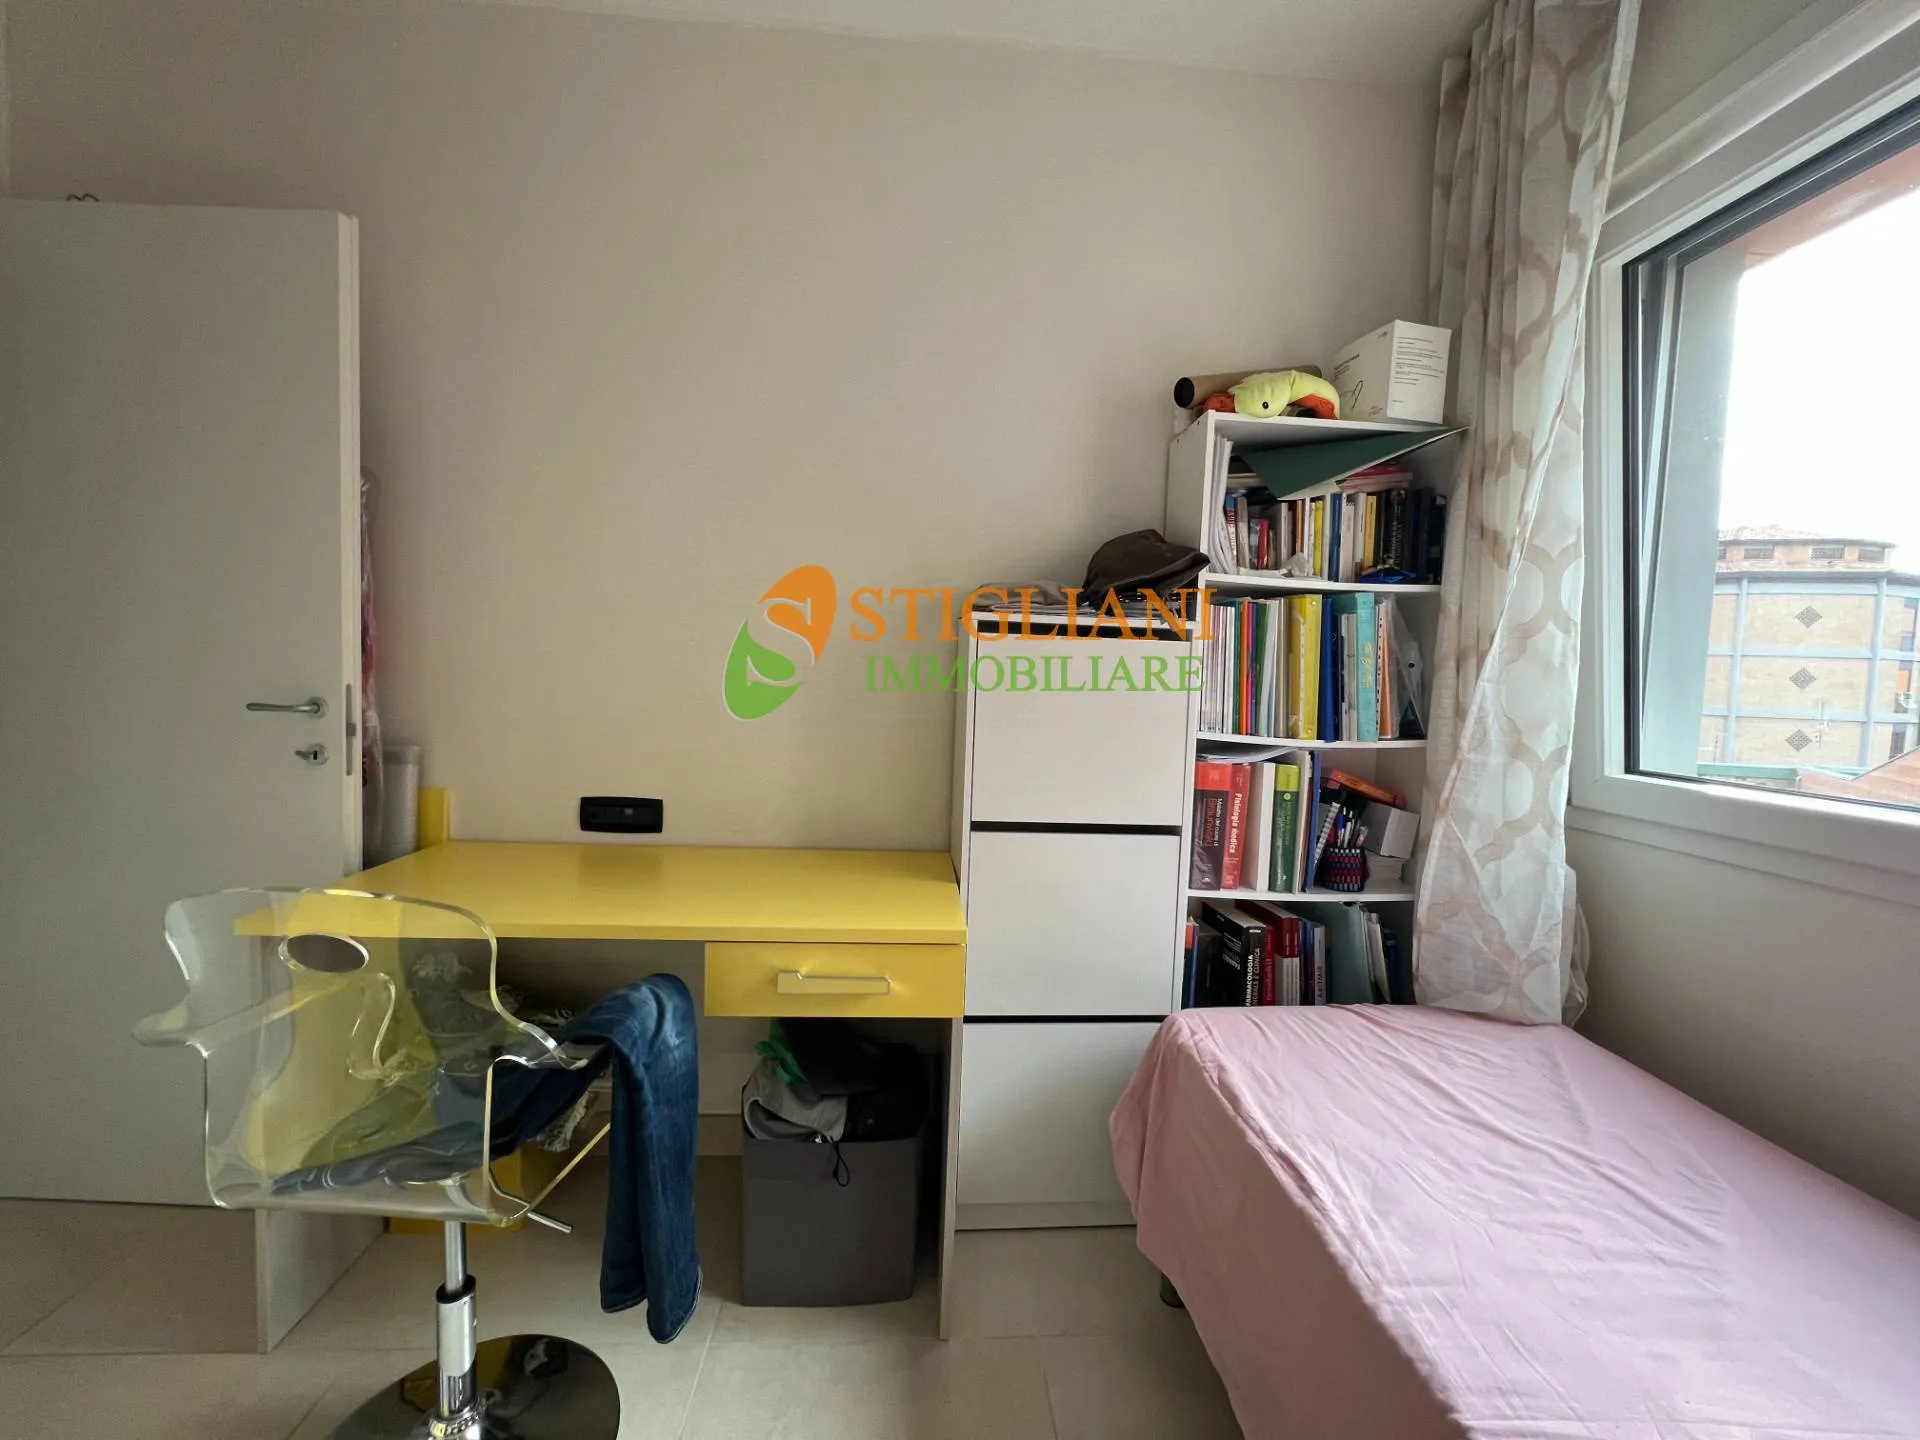 Immagine per Appartamento in vendita a Campobasso Corso Bucci